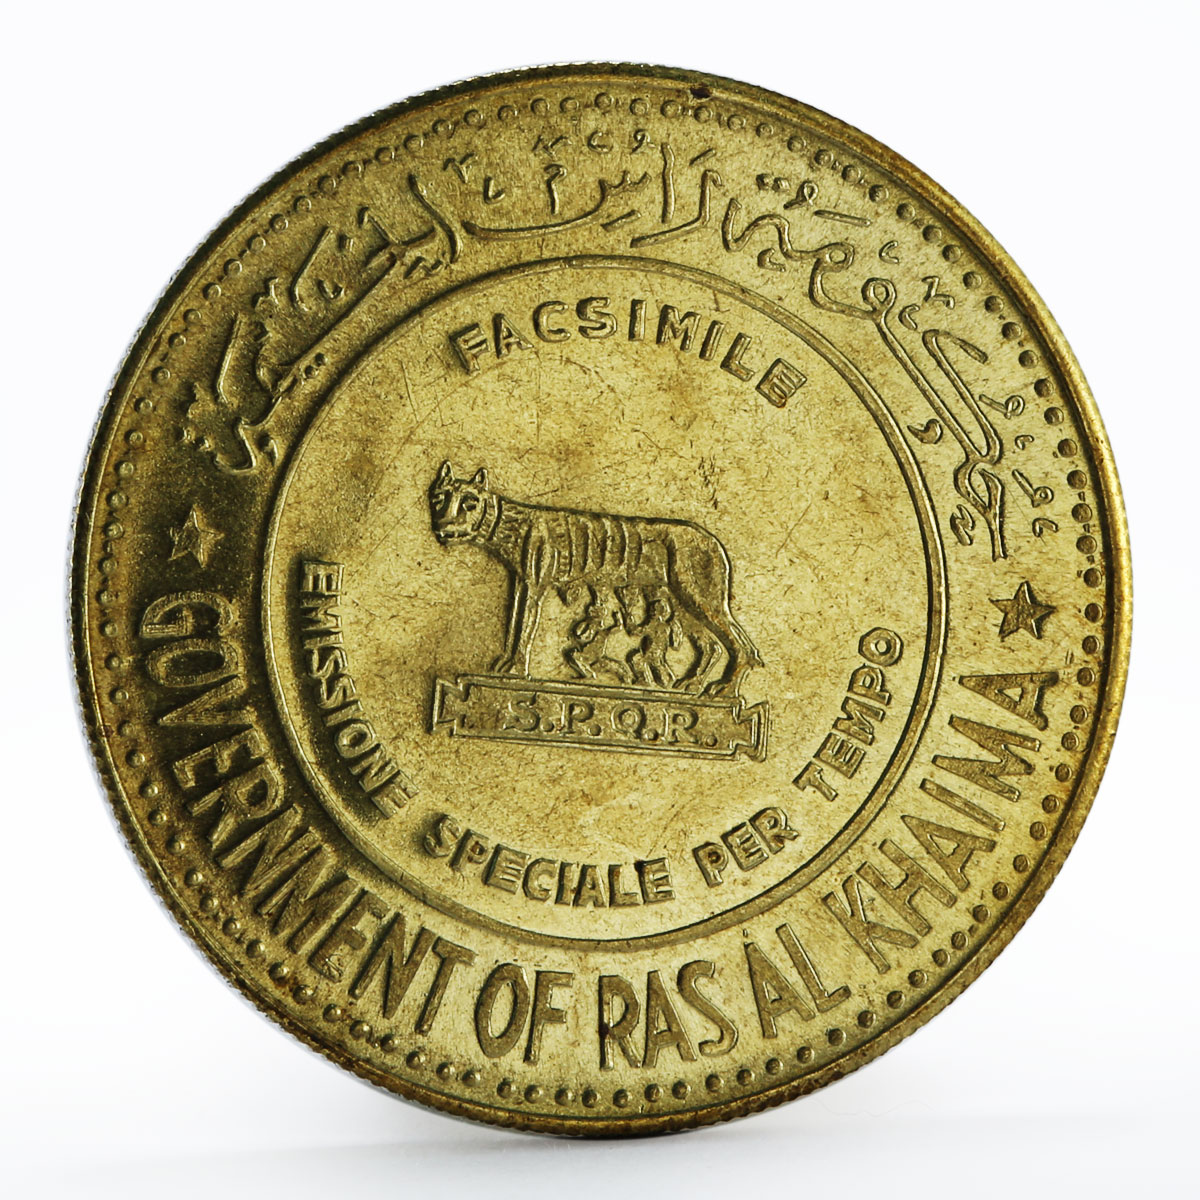 Ras al-Khaimah Figure with gun Centennial of Rome as Capital of Italy token 1970